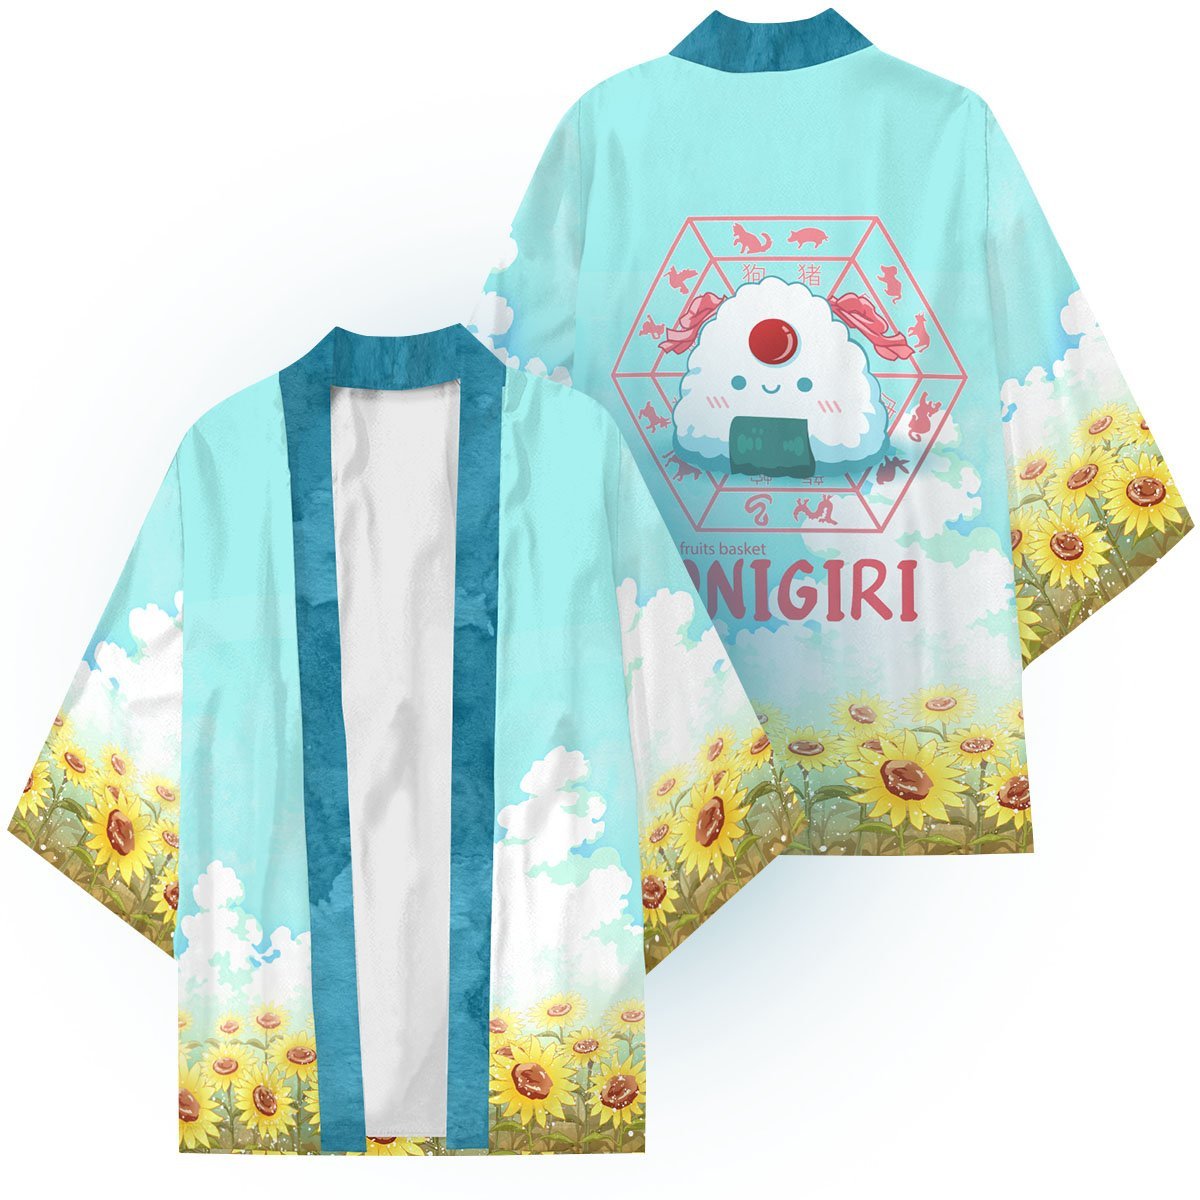 tohru the onigiri kimono 817982 - Otaku Treat